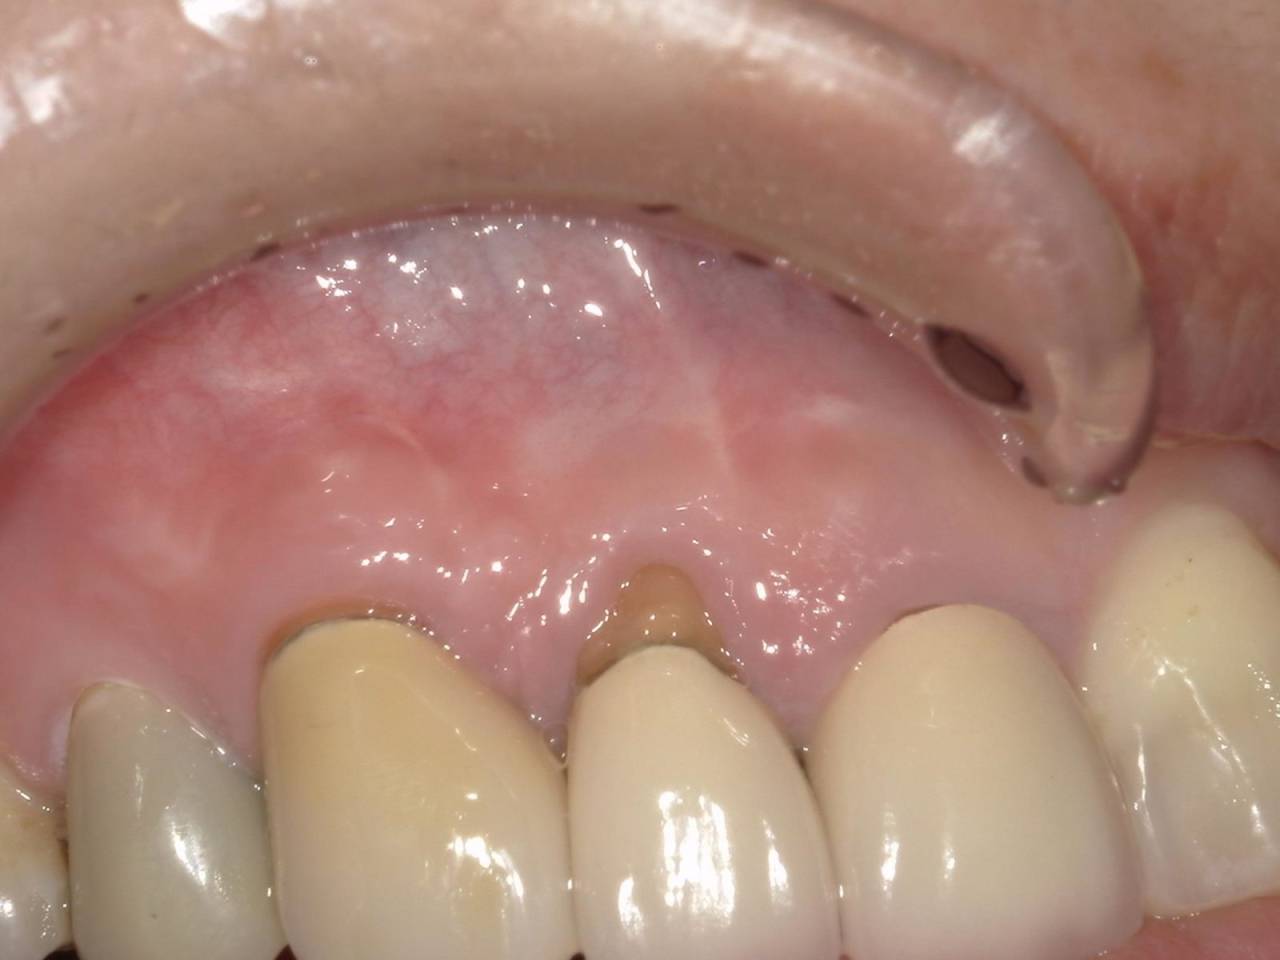 術後3ヶ月<br>歯茎の出来物は消失し、押しても痛みや違和感は完全に消失しております。